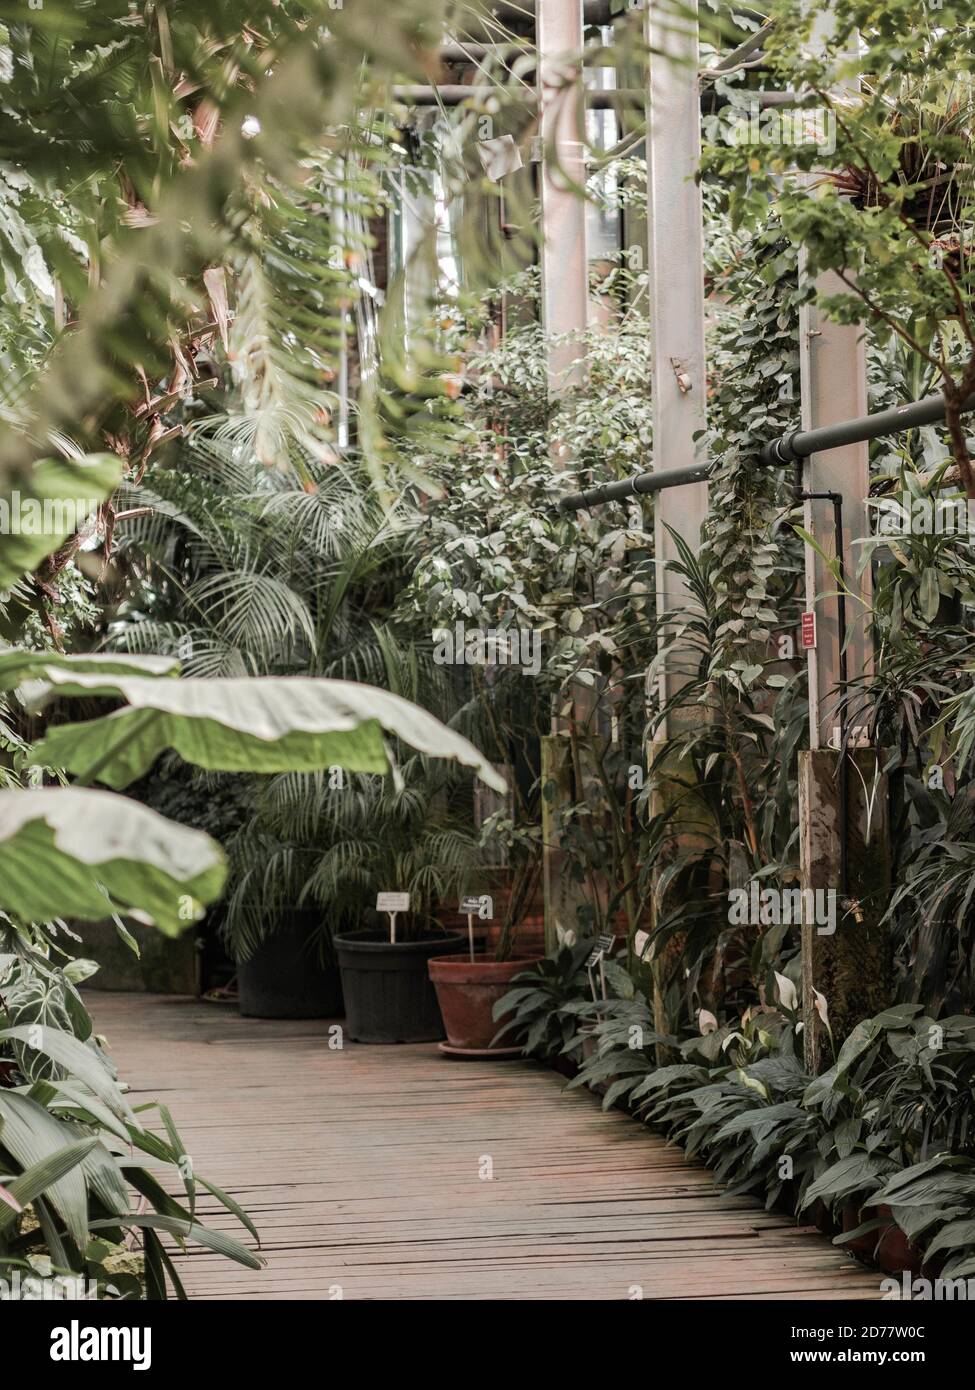 Vue sur une vieille serre tropicale avec plantes à feuilles persistantes, palmiers, lianas Banque D'Images